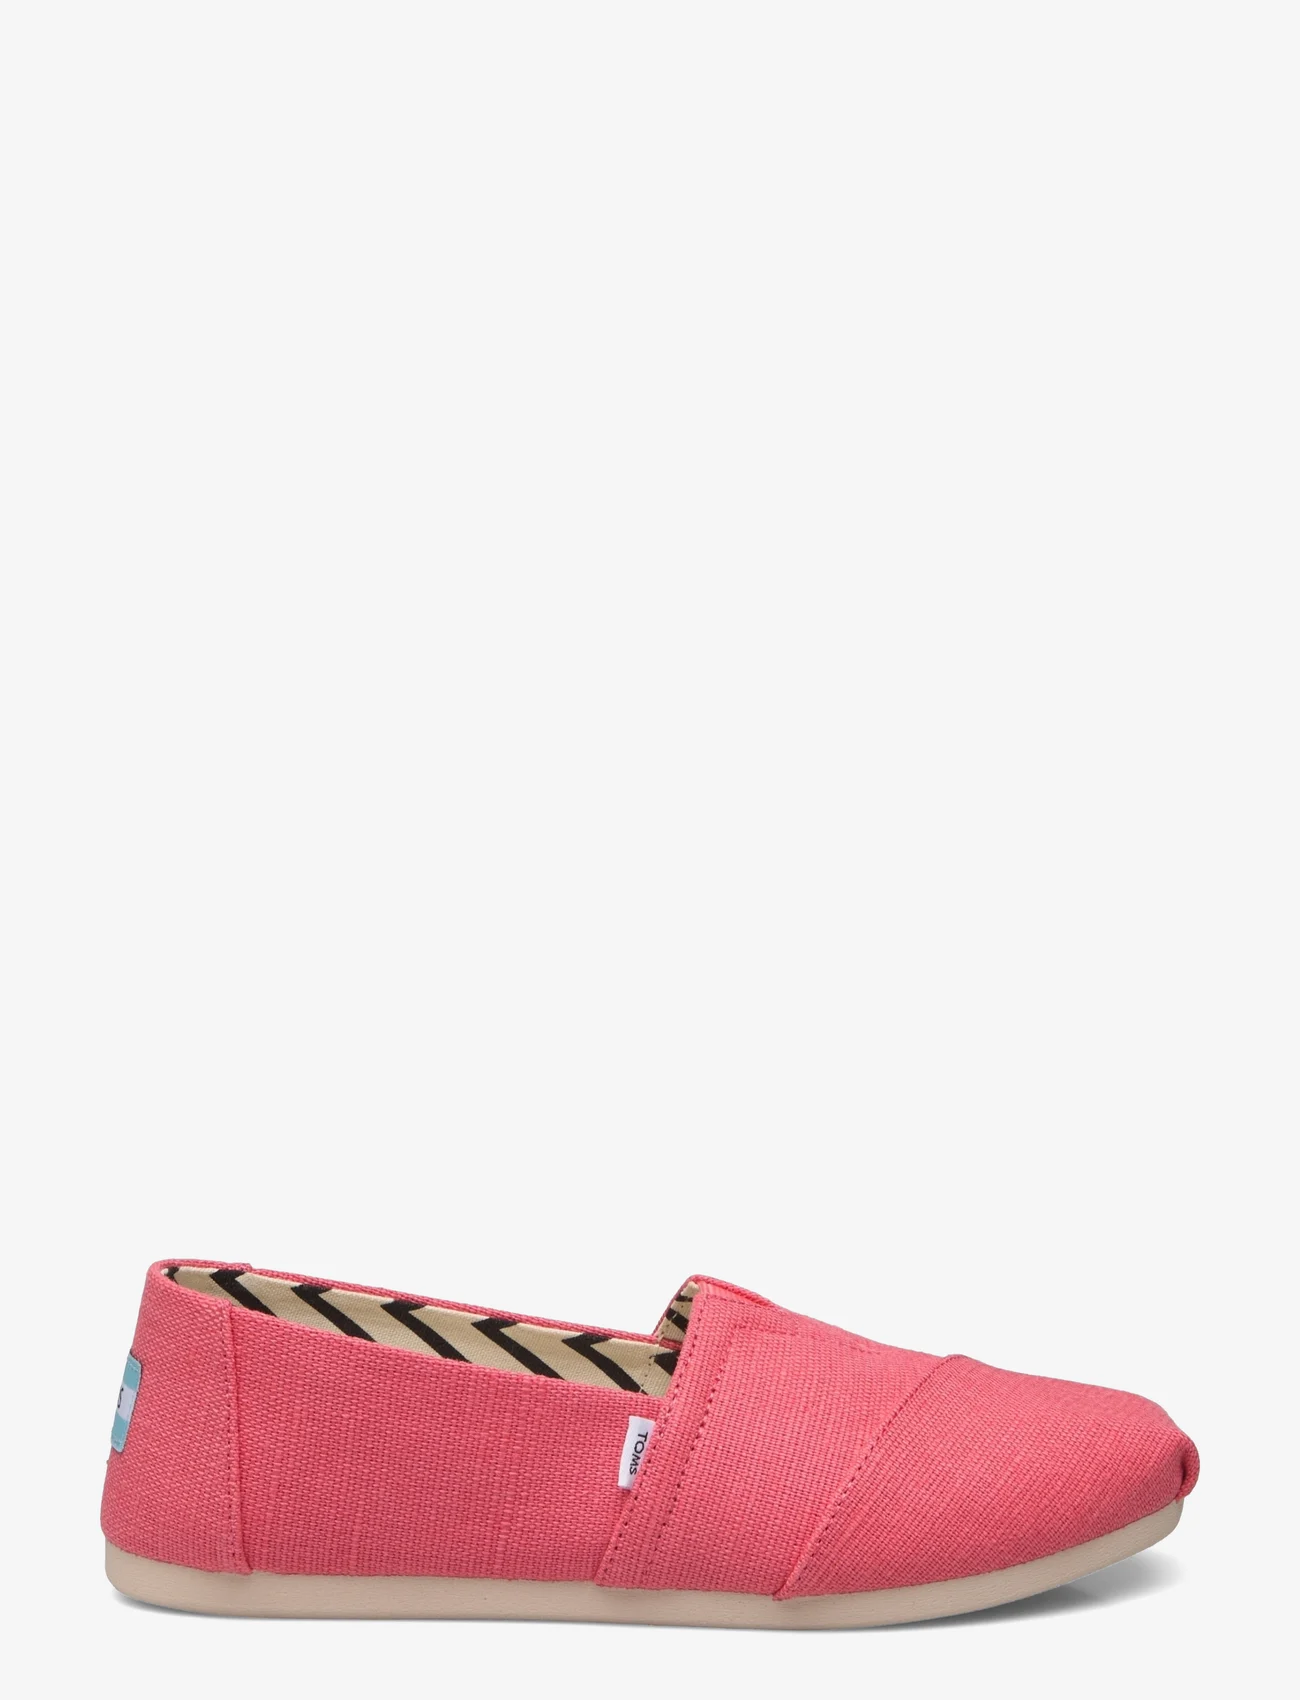 TOMS - Alpargata - flade sko - pink - 1